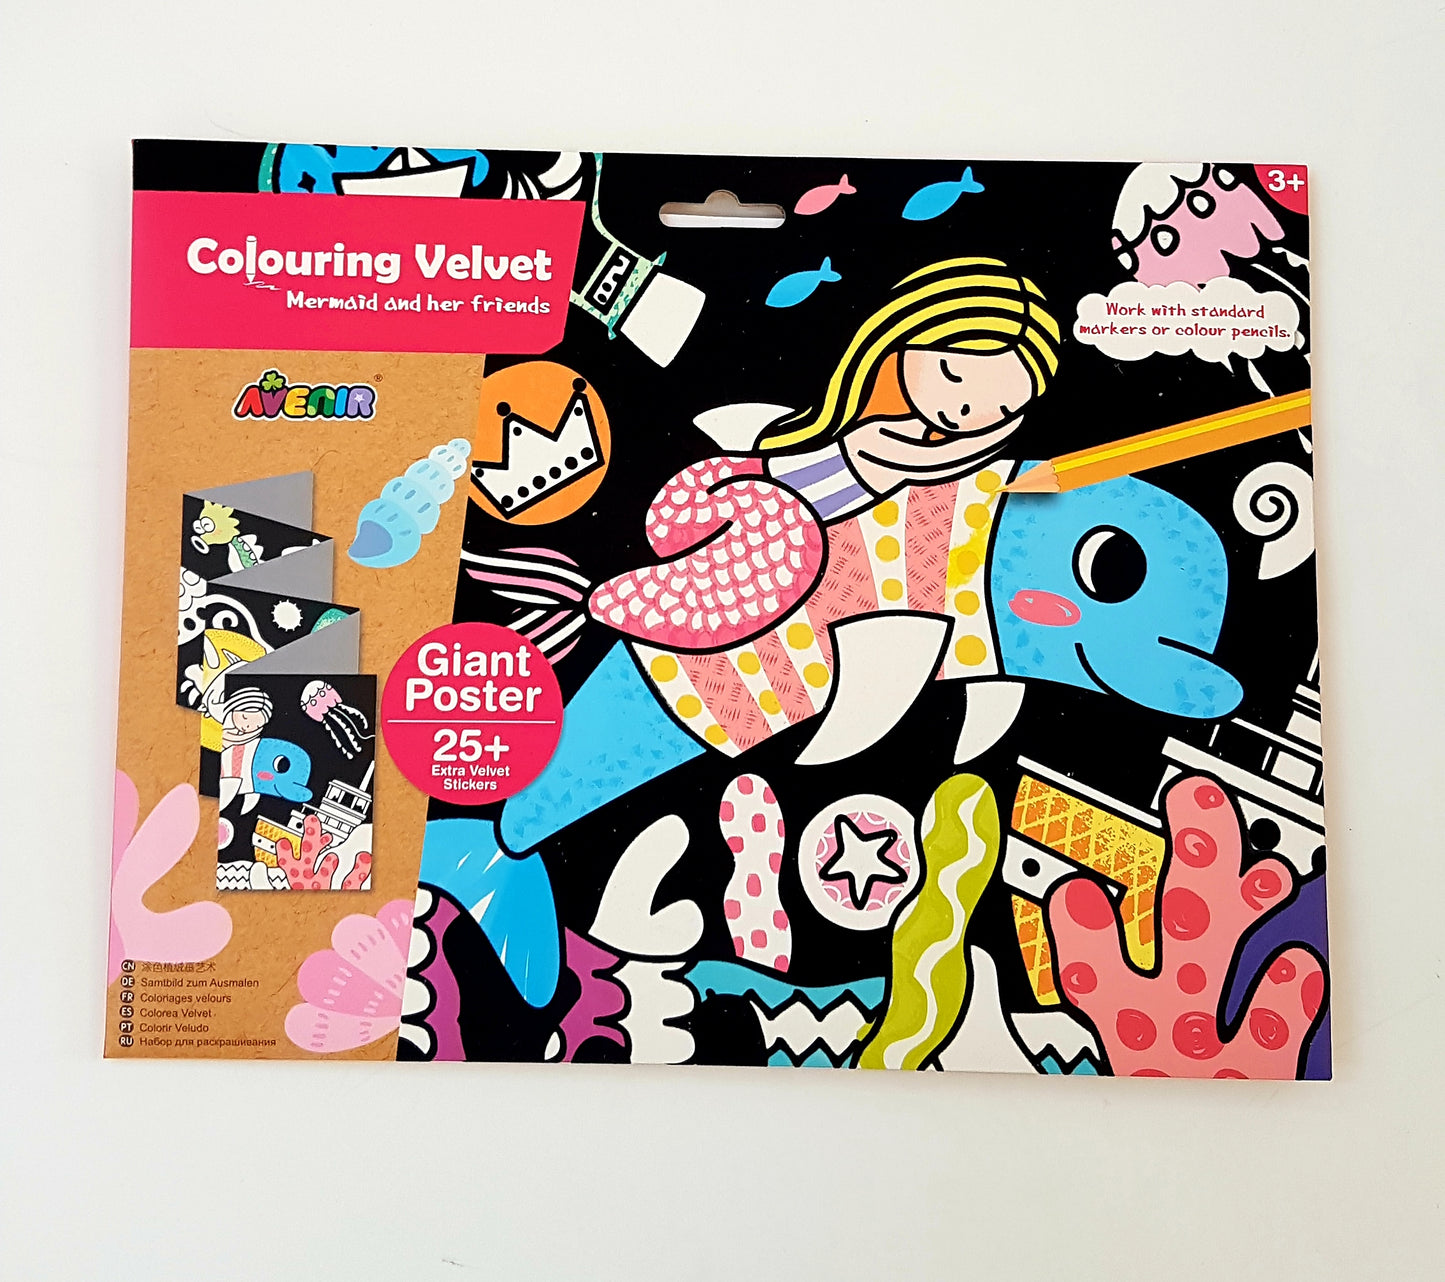 kidz-stuff-online - Colouring Velvet Kit - Mermaid and her Friends